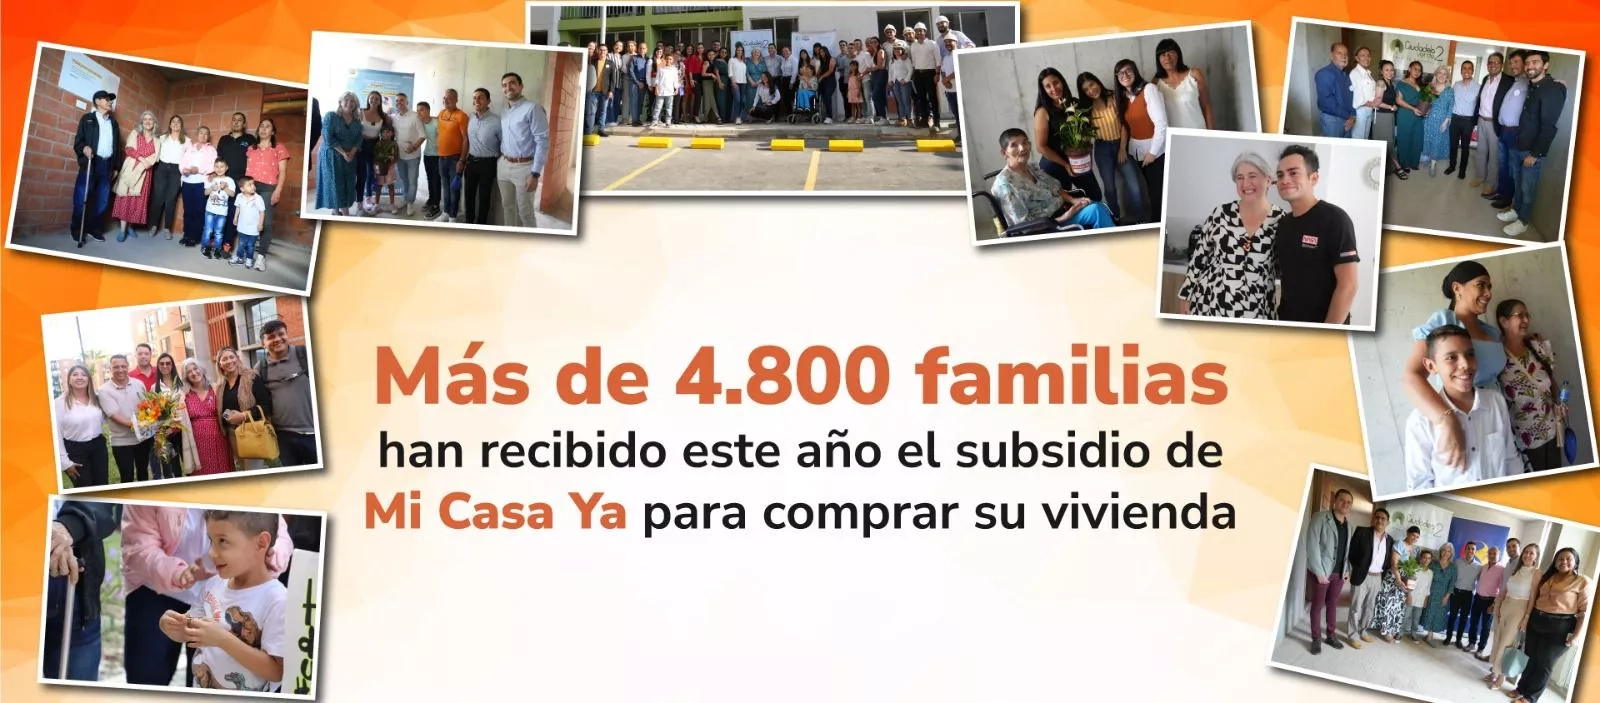 Más de 4.800 familias han recibido este año el subsidio de Mi Casa Ya para comprar su vivienda